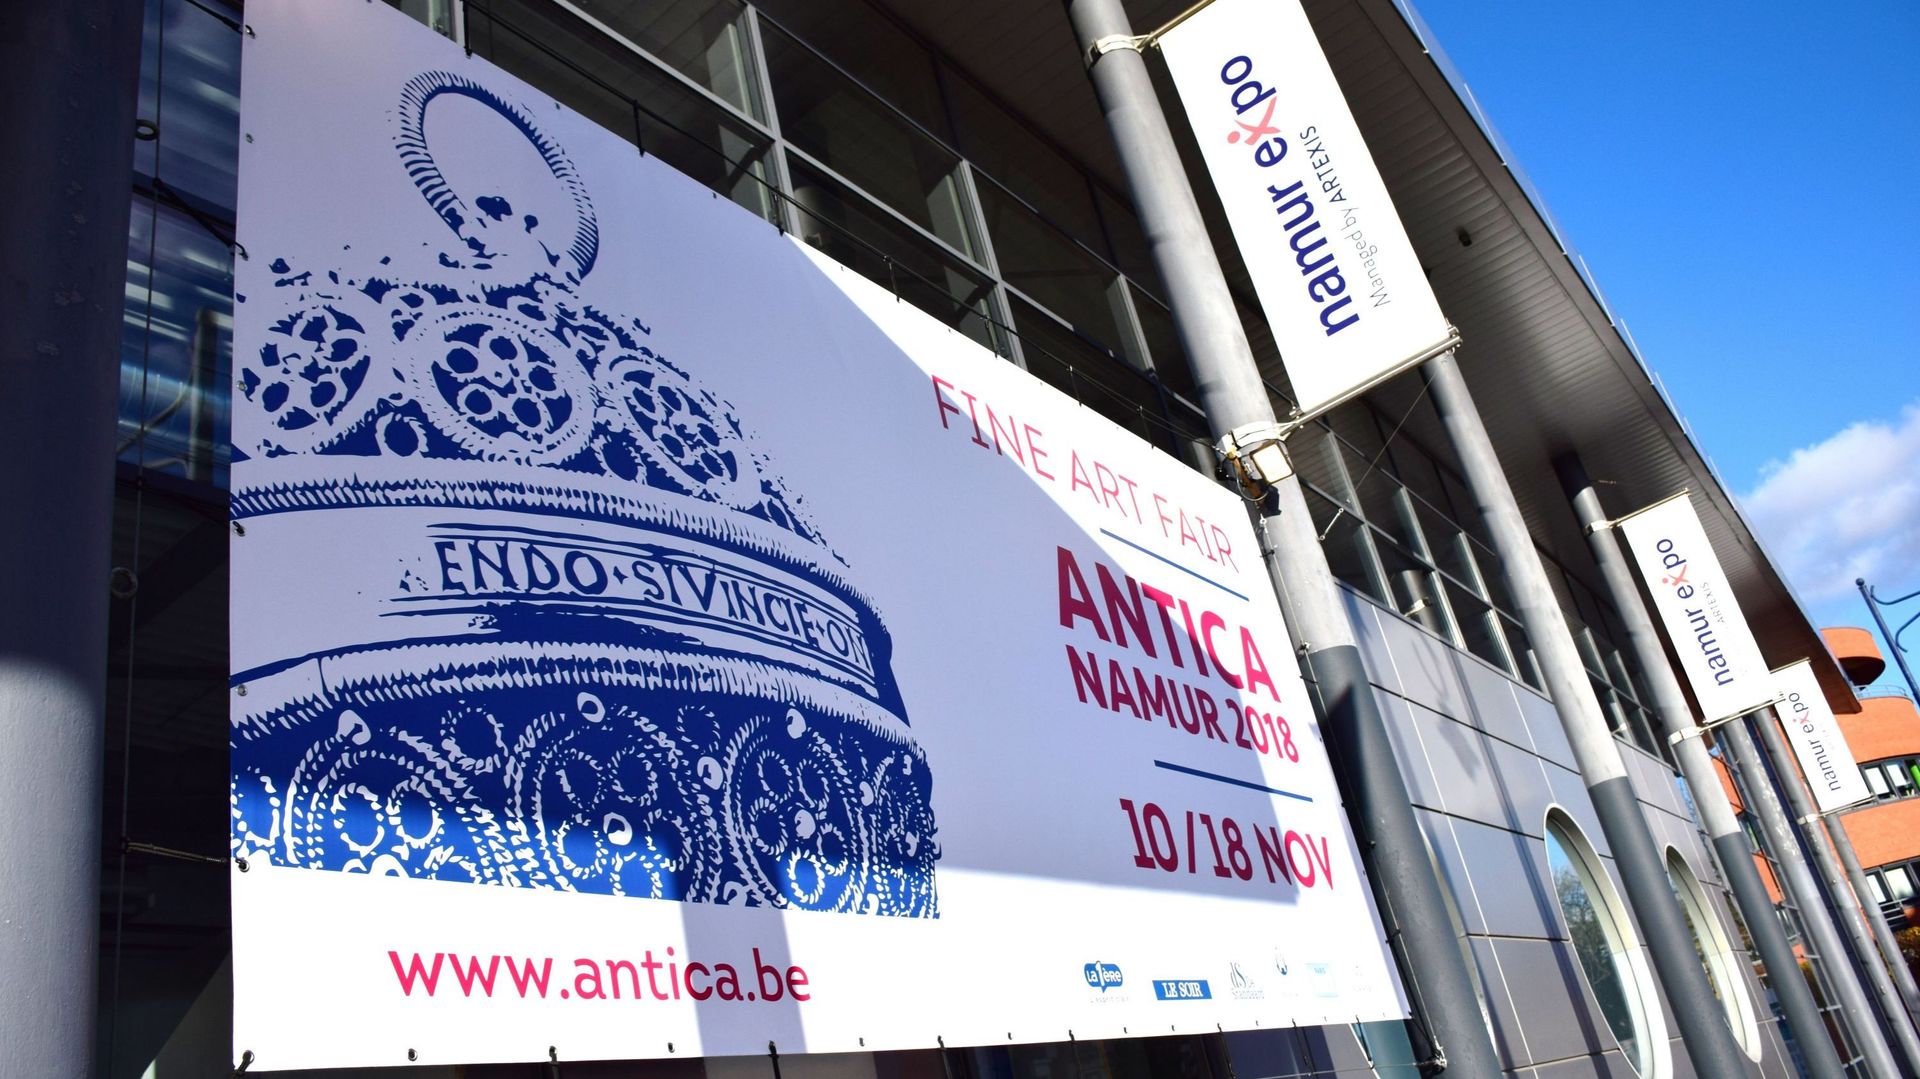 La foire Antica Namur Fine Art Fair, qui devait se tenir du 11 au 21 novembre 2020, est annulée.